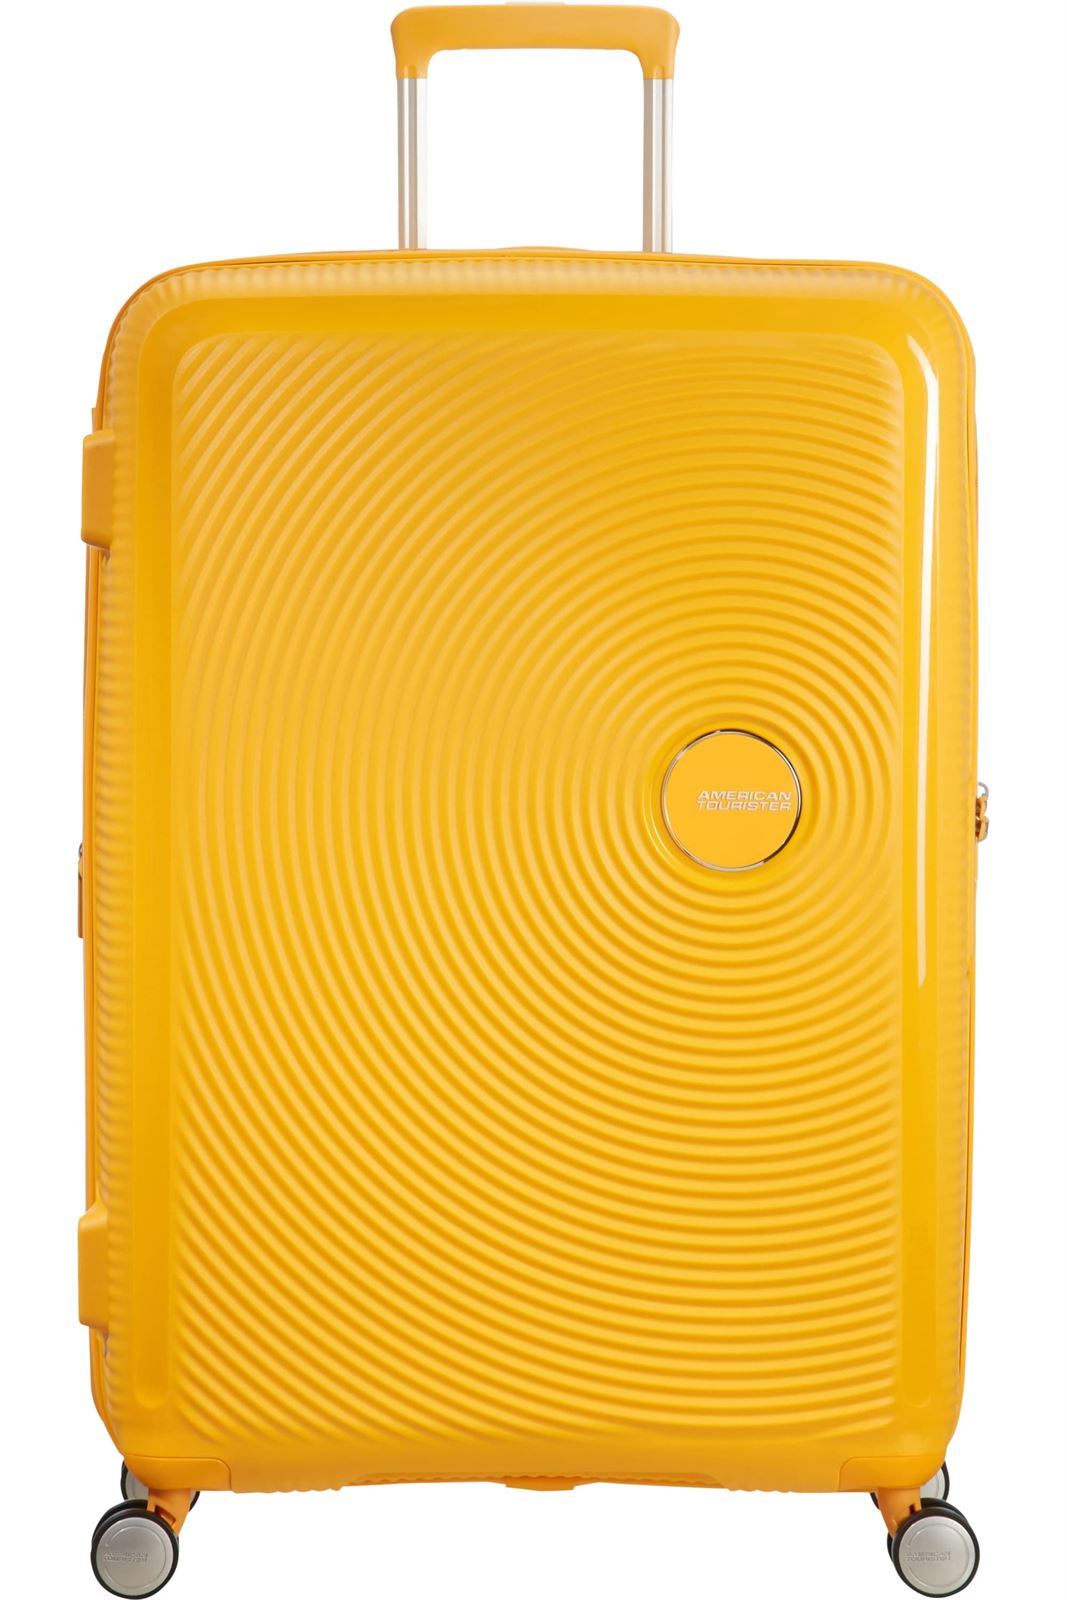 maleta american tourister soundbox grande expandible golden yellow - Imagen 1